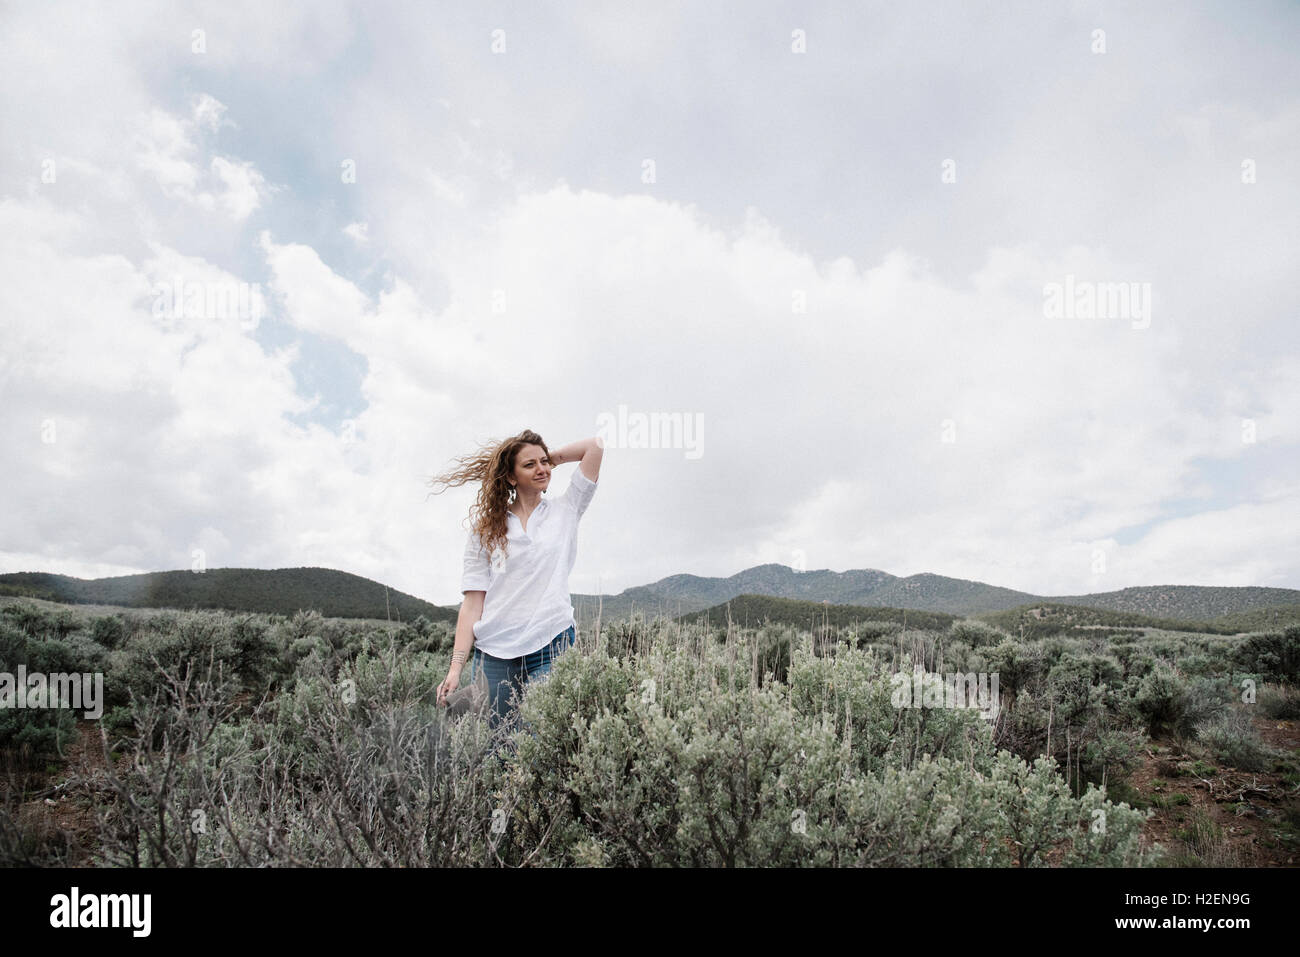 Une femme debout dans un paysage ouvert avec une vue sur des montagnes de bois et de broussailles. Banque D'Images